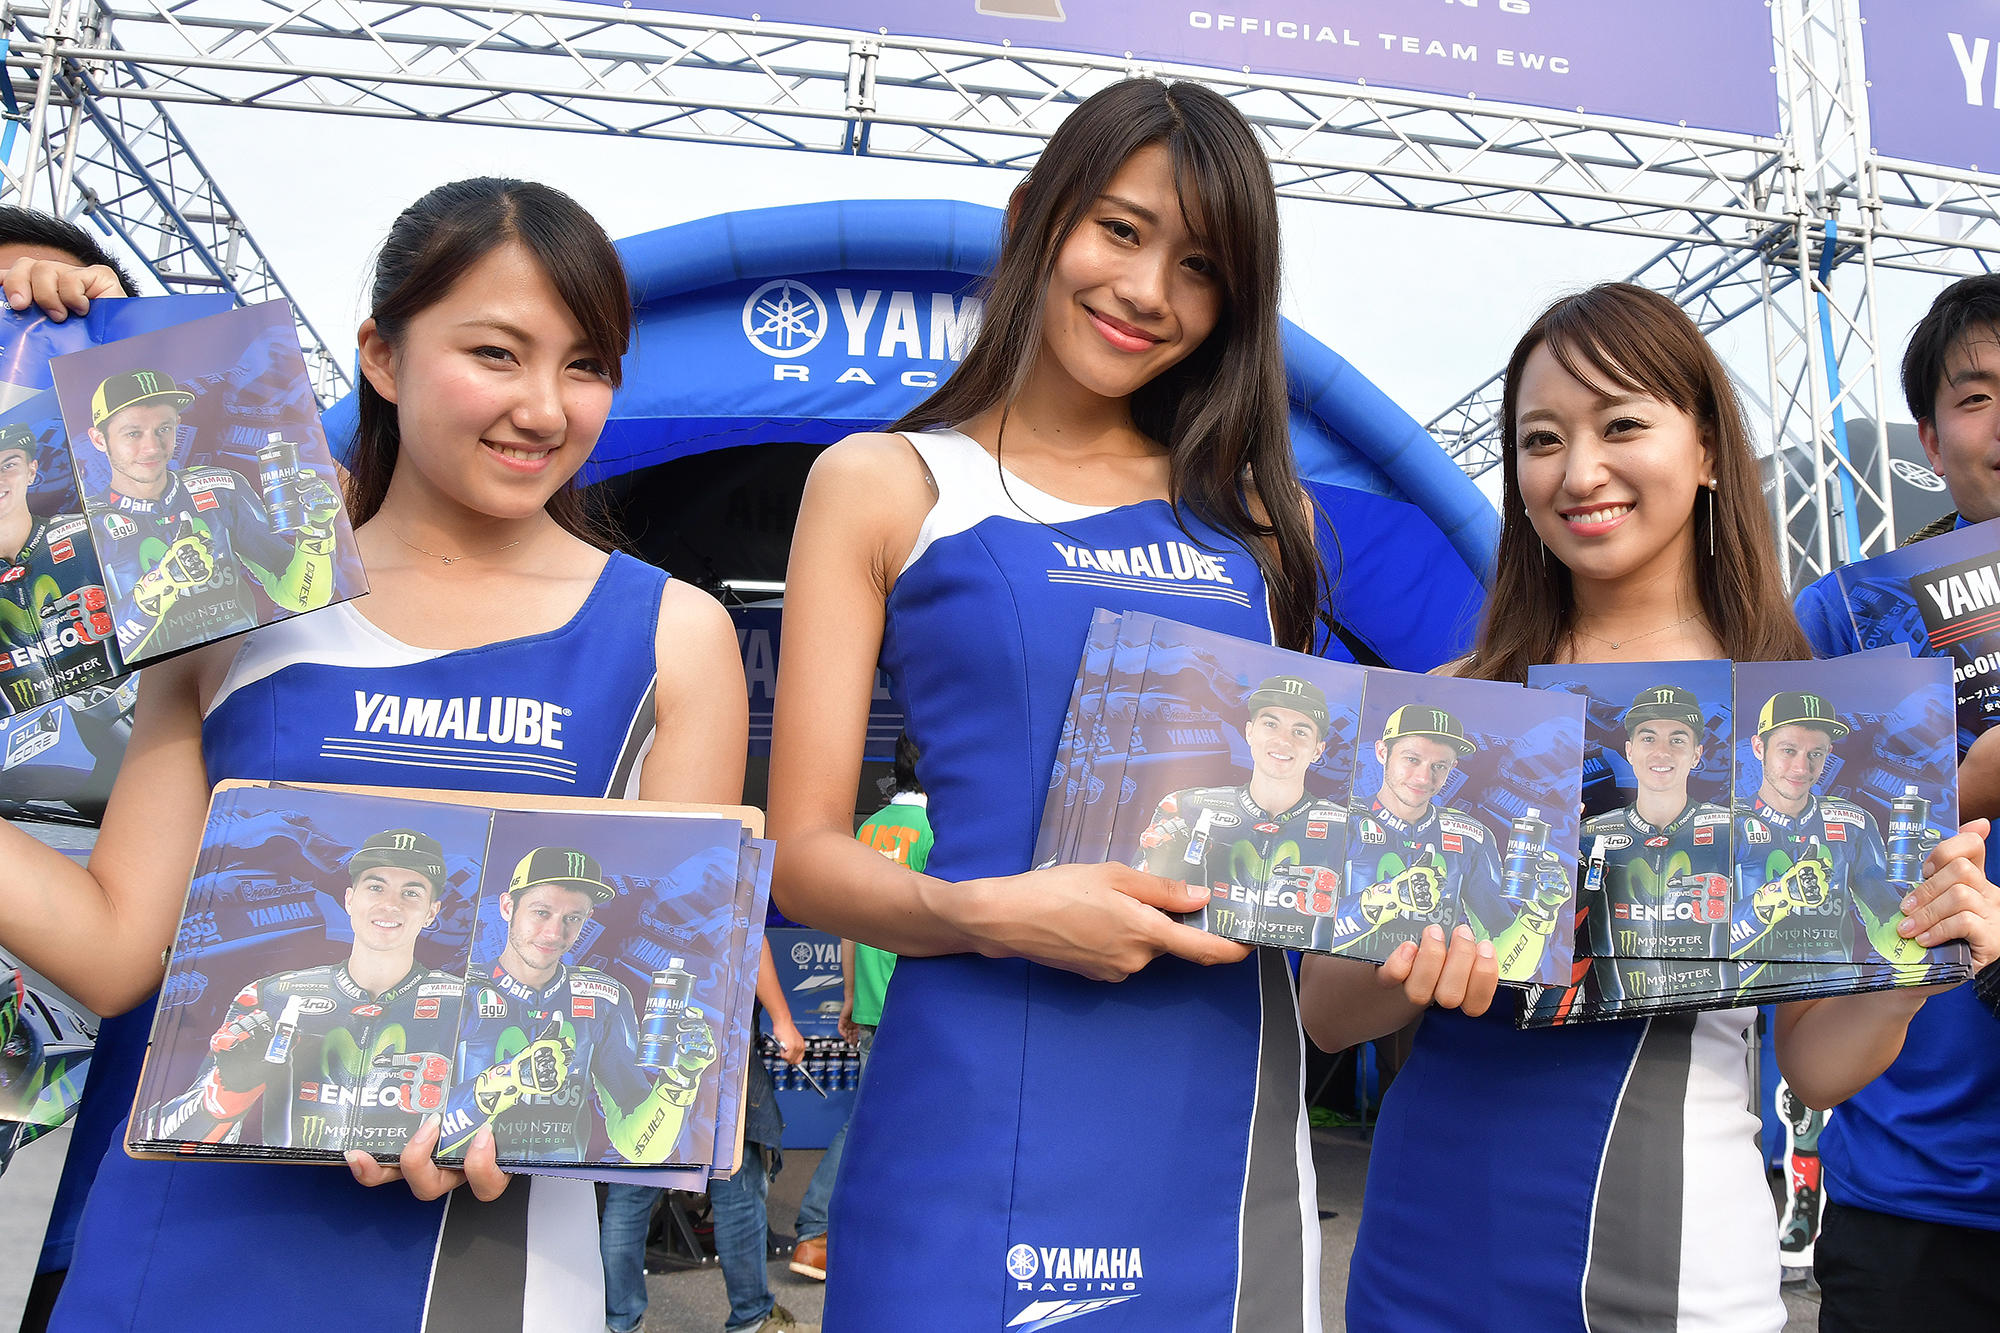 ヤマハ純正オイルの世界統一ブランド「YAMALUBE」のアンバサダーを務めるMovistar Yamaha MotoGPのV・ロッシ選手とM・ビニャーレス選手のポスターの配布